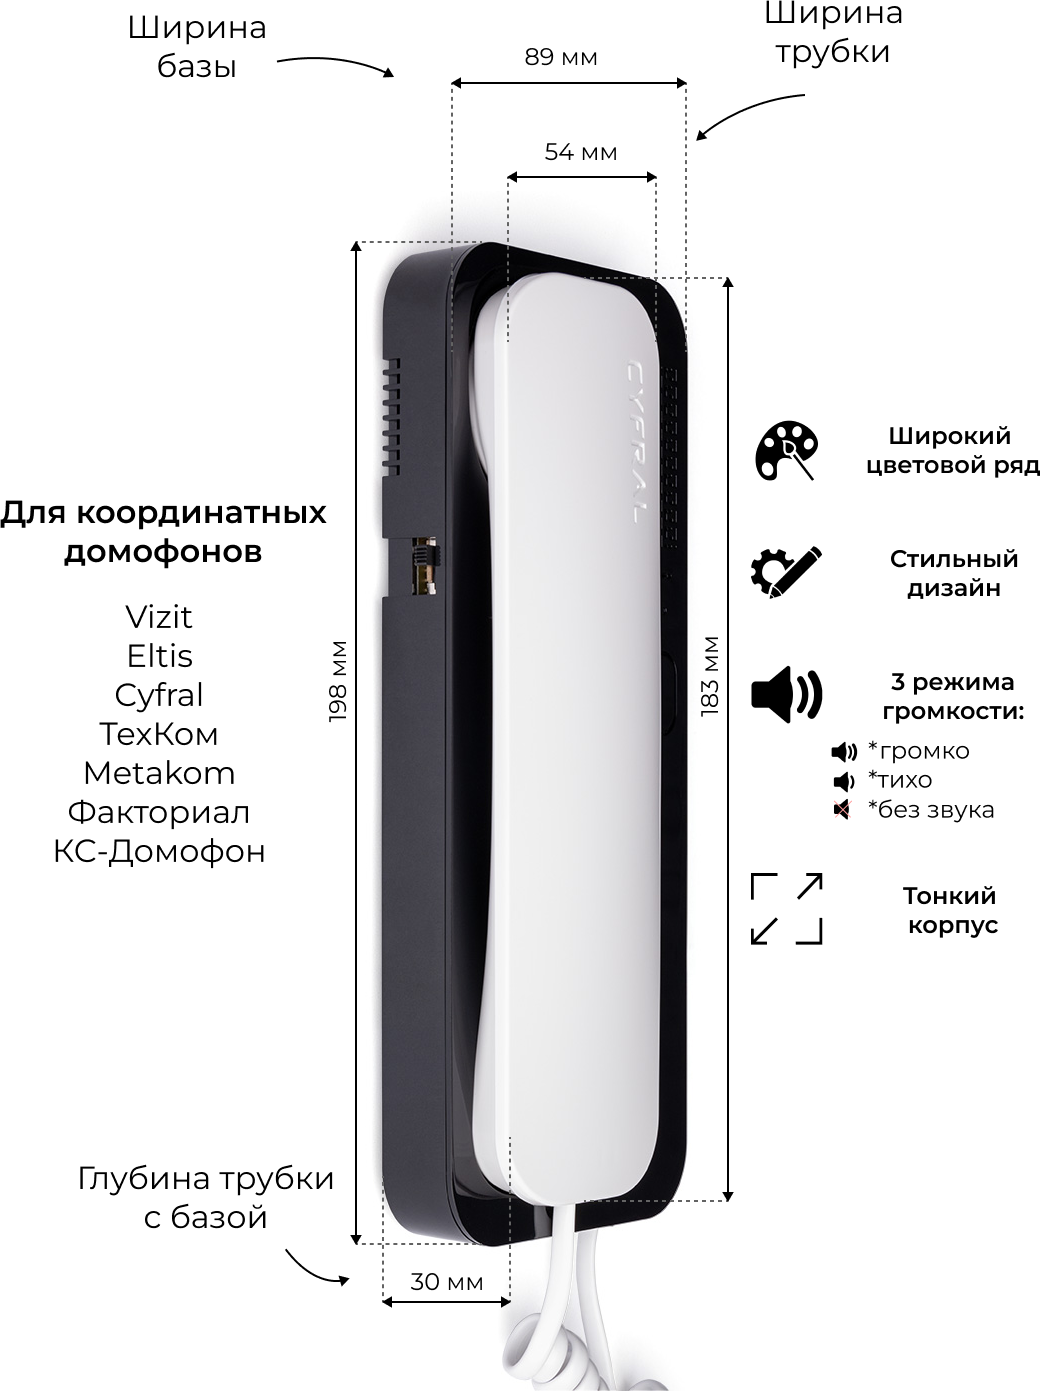 Координатная трубка домофона CYFRAL Unifon SMART U (бело-черный, глянец). Для подъездных домофонов: VIZIT, CYFRAL, ELTIS.